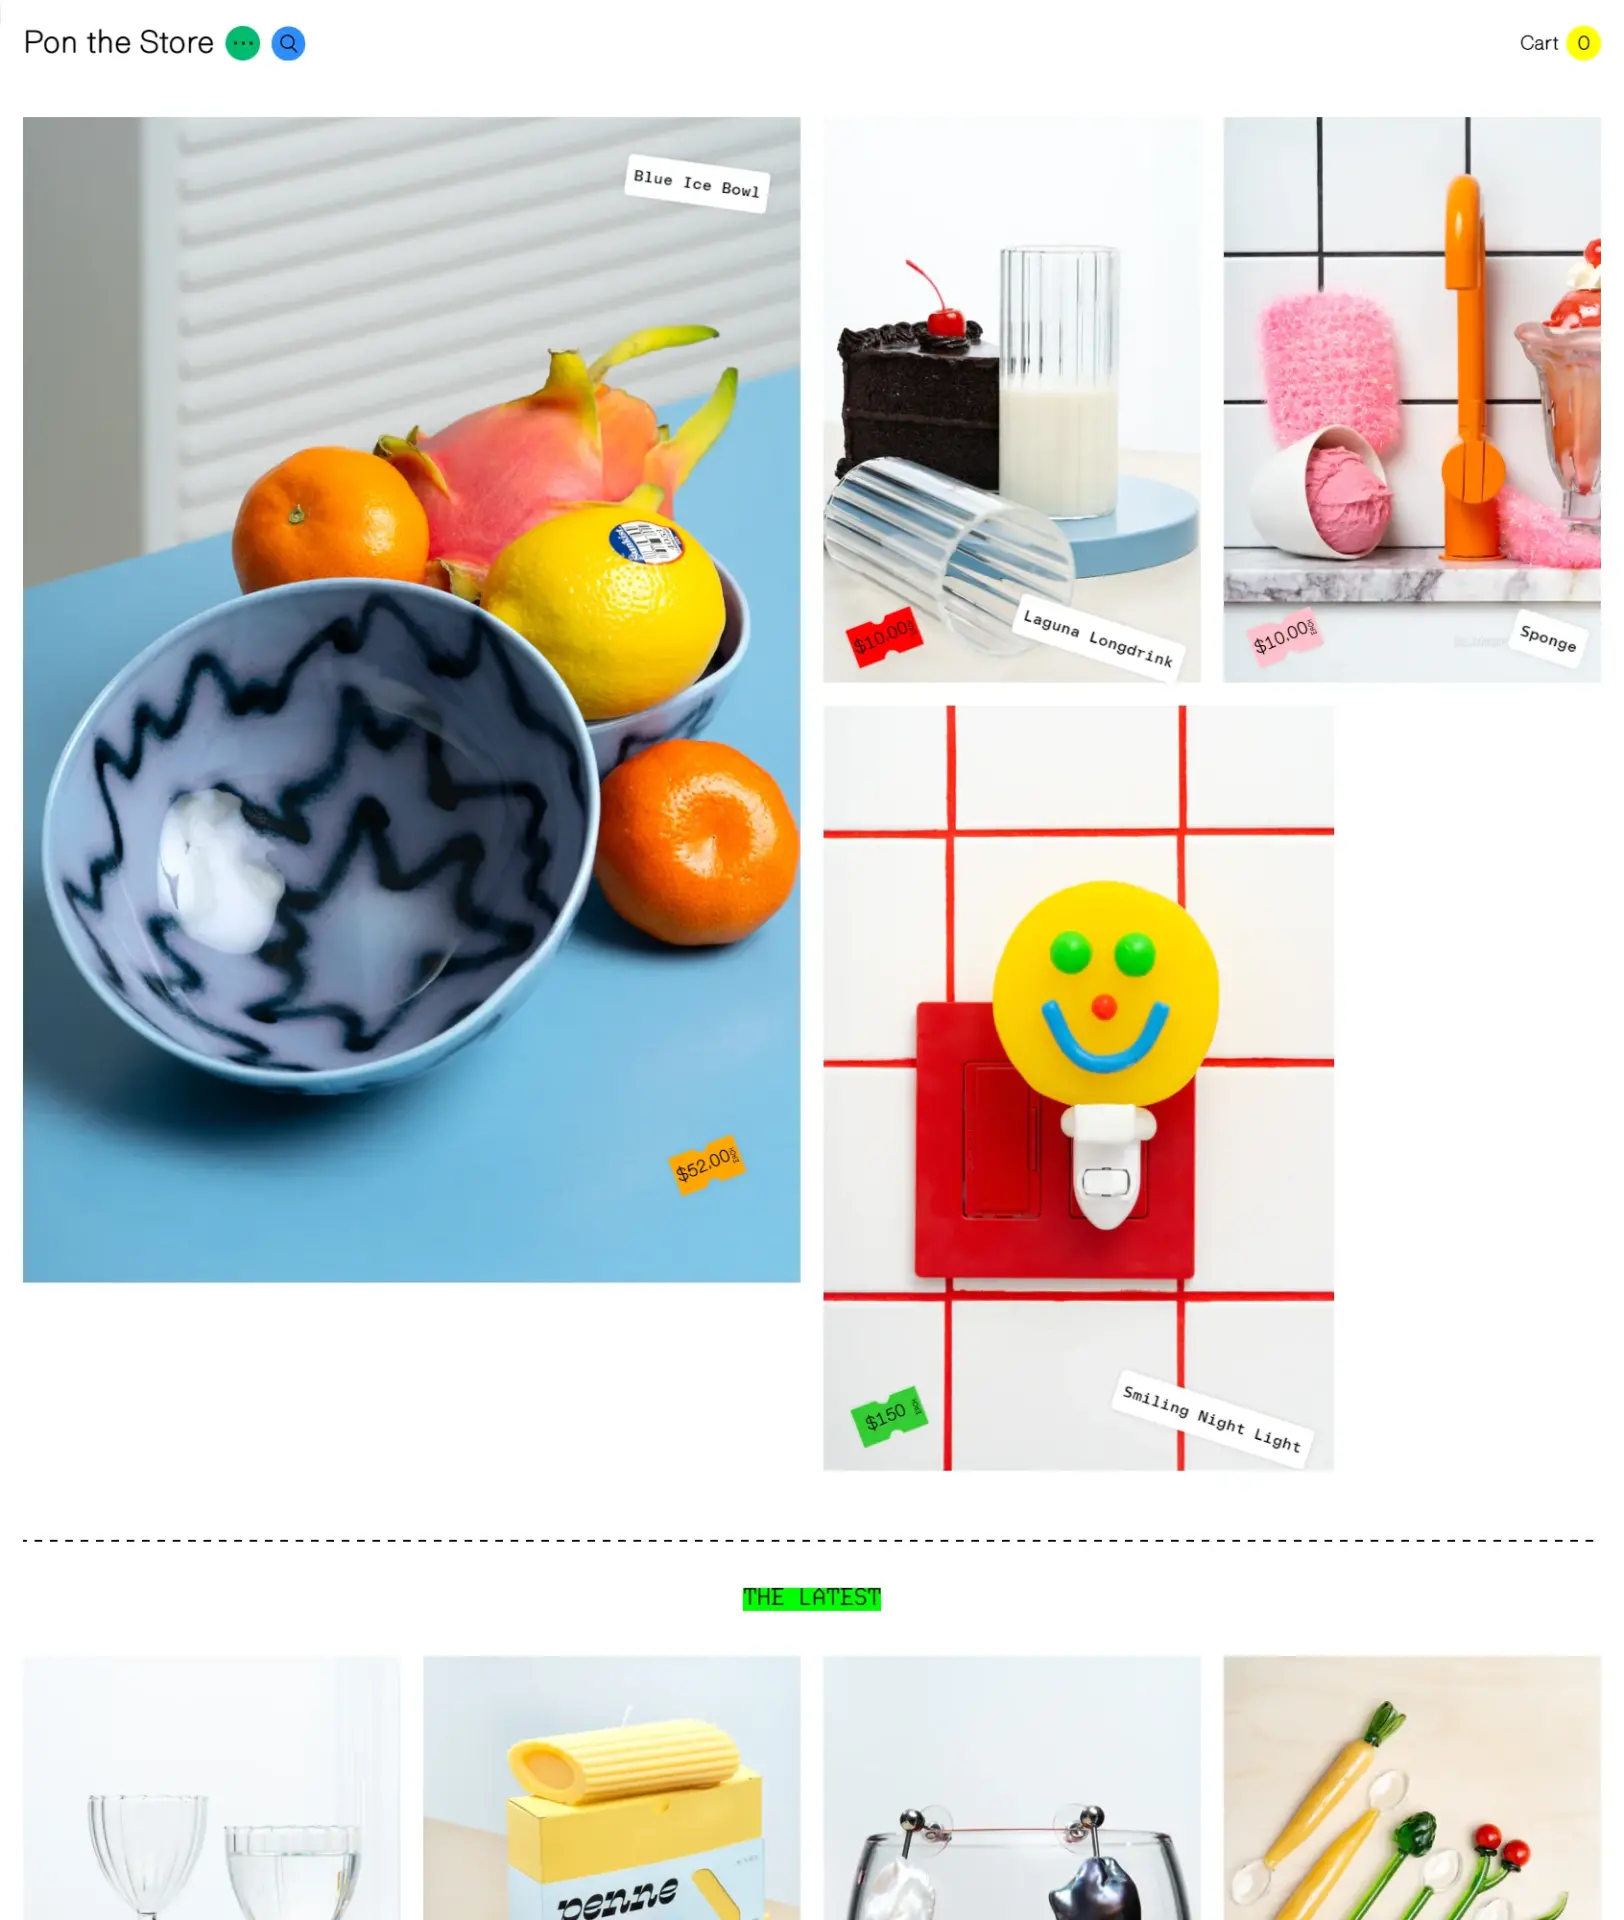 Blogduwebdesign inspiration design site web ecommerce pon the store 1